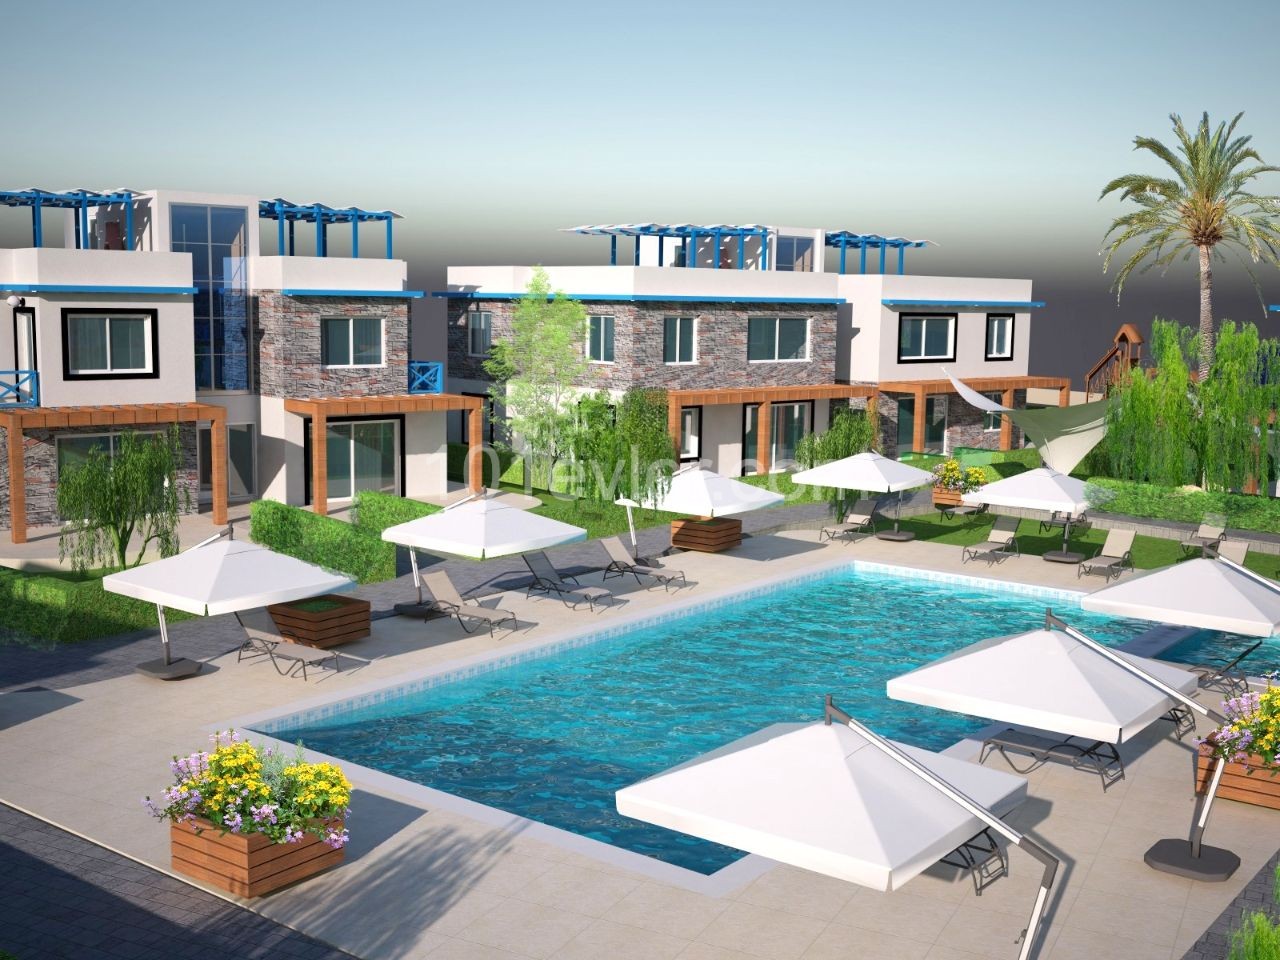 Türkische Eigentumswohnungen in Kyrenia Karsiyaka mit Pool in 300 m Entfernung vom Meer. Erdgeschoss oder Obergeschoss mit Terrasse Optionen. 05338403555 ** 